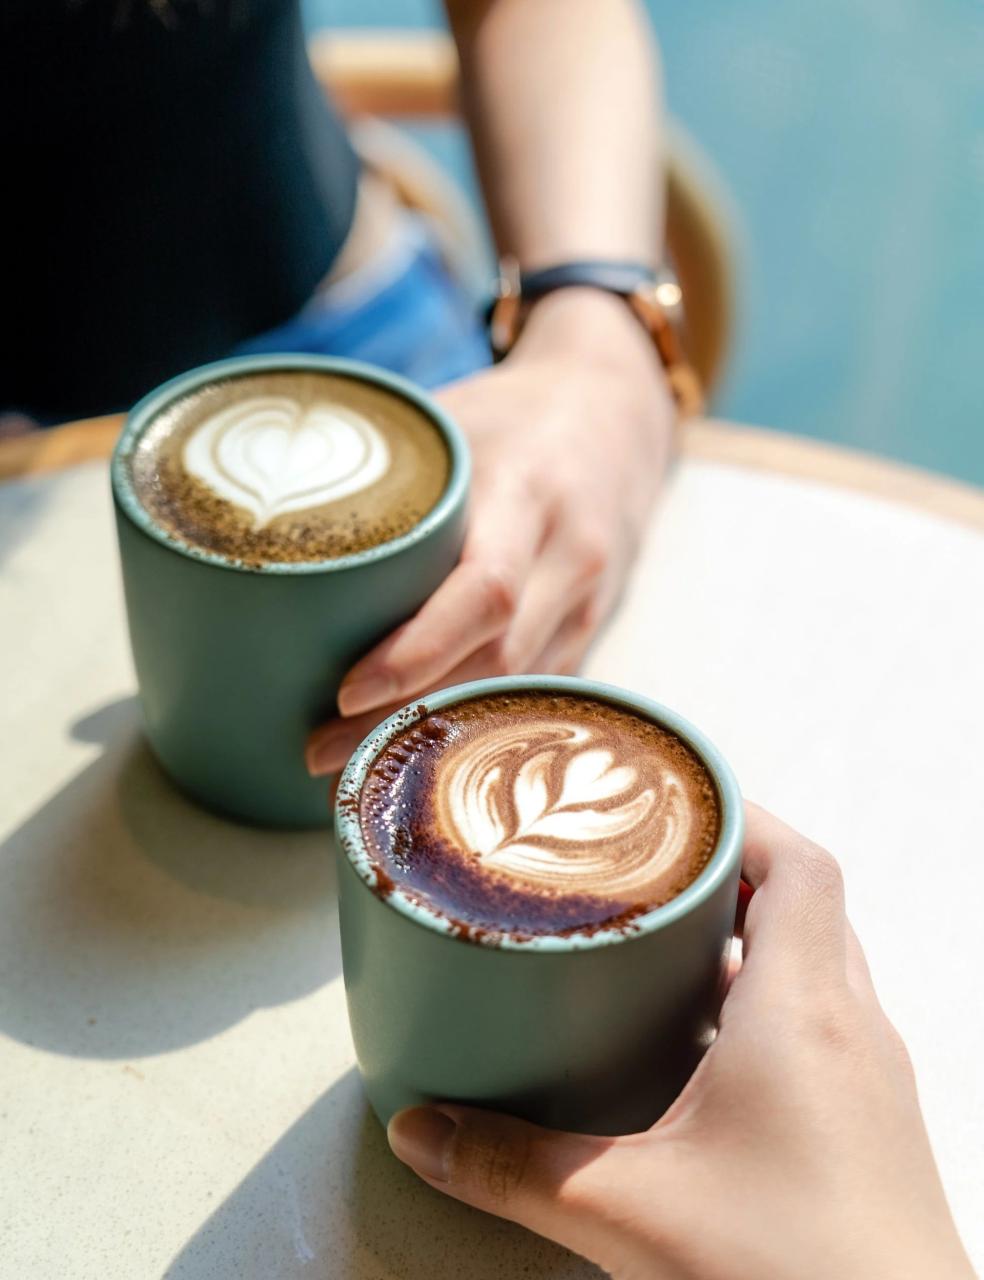 Cà phê không chỉ có hàm lượng caffeine cao mà còn chứa nhiều chất chống oxy hóa. Ảnh: Cupping Room Coffee Roasters.